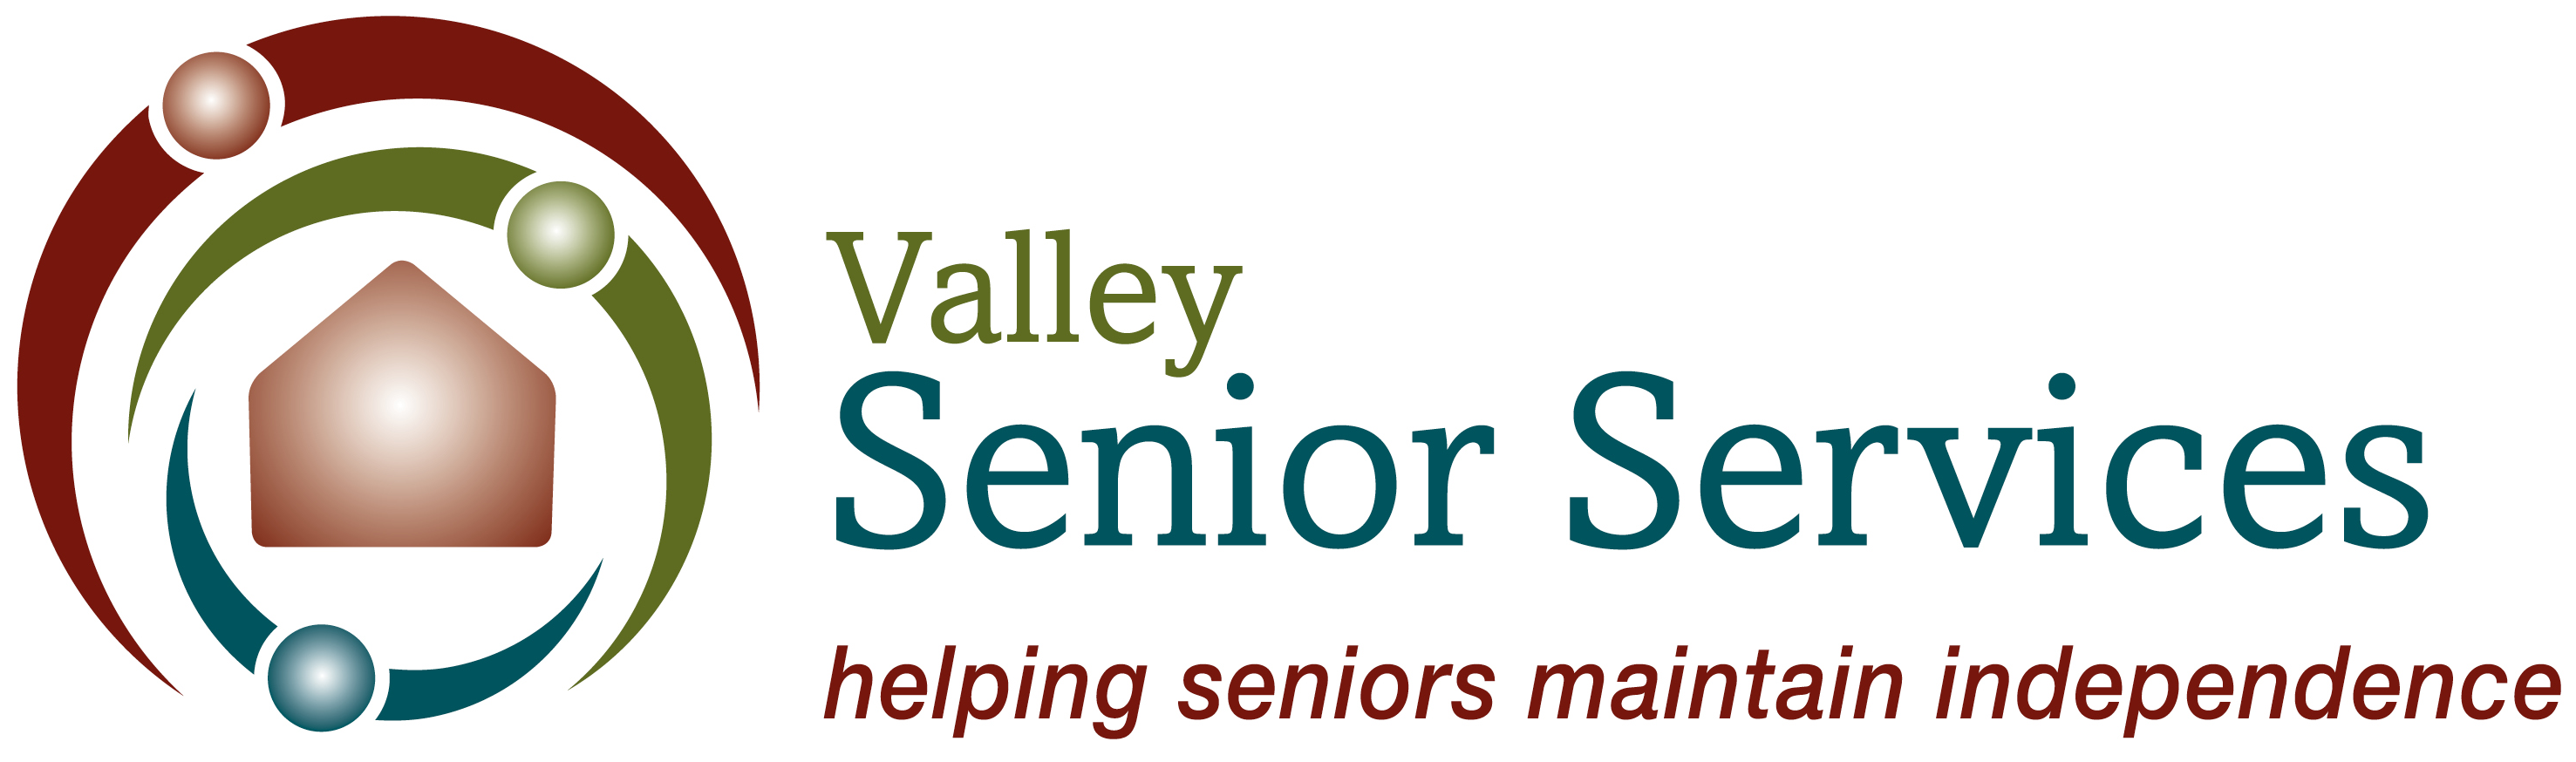 Valley Senior Services